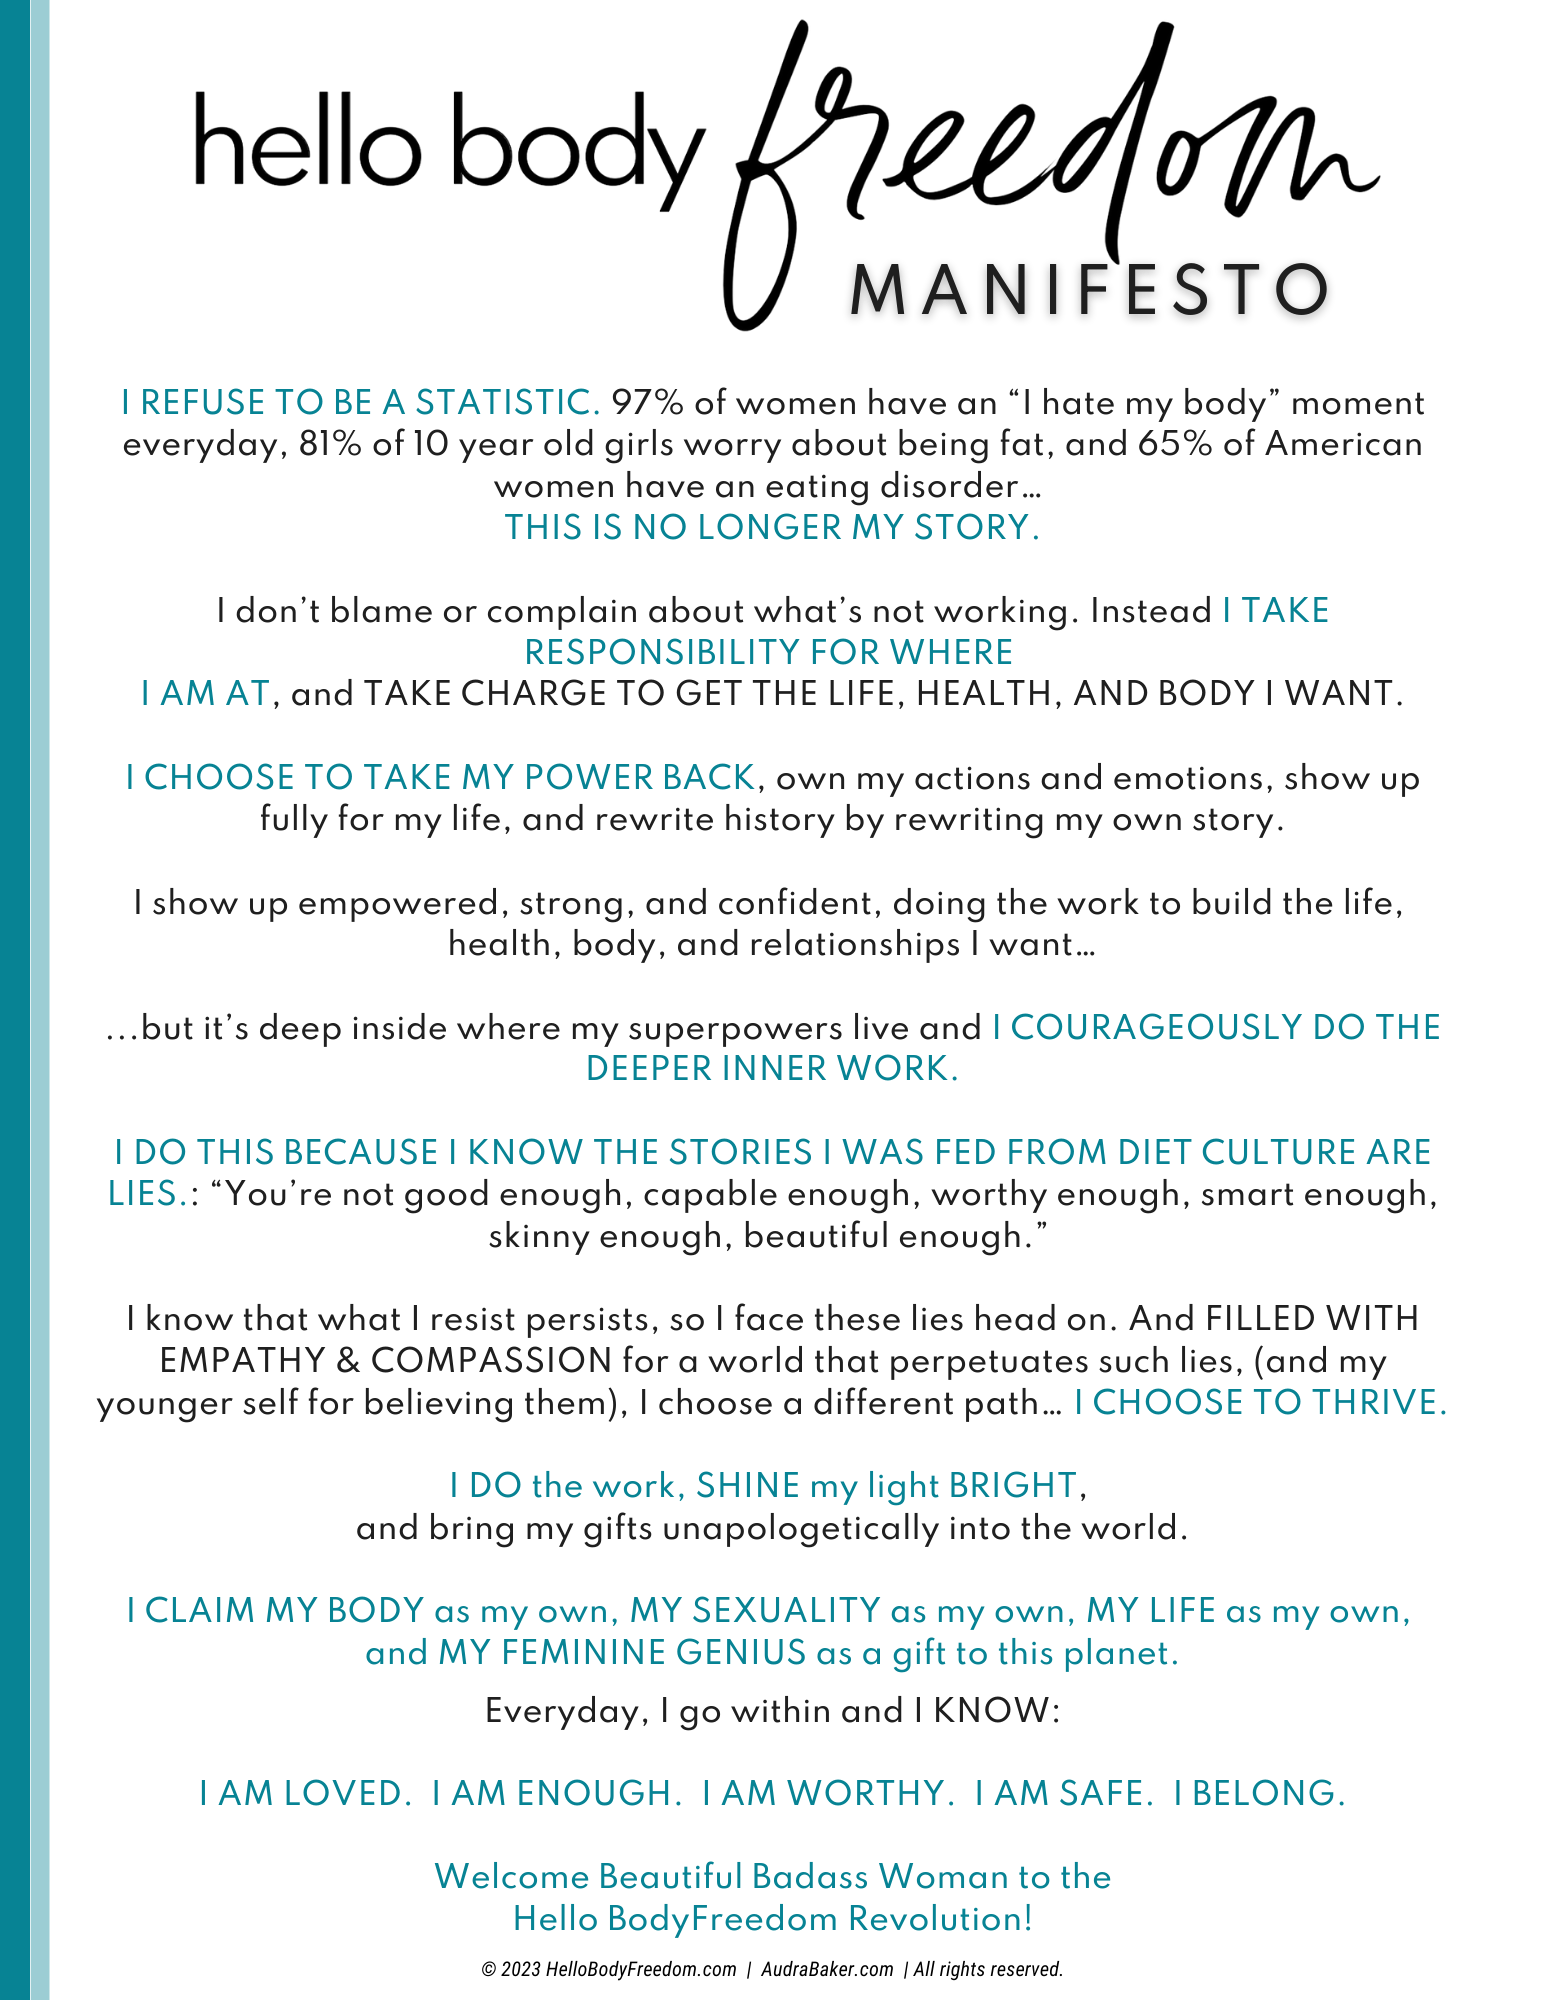 Hello Body Freedom: Manifesto & Mission